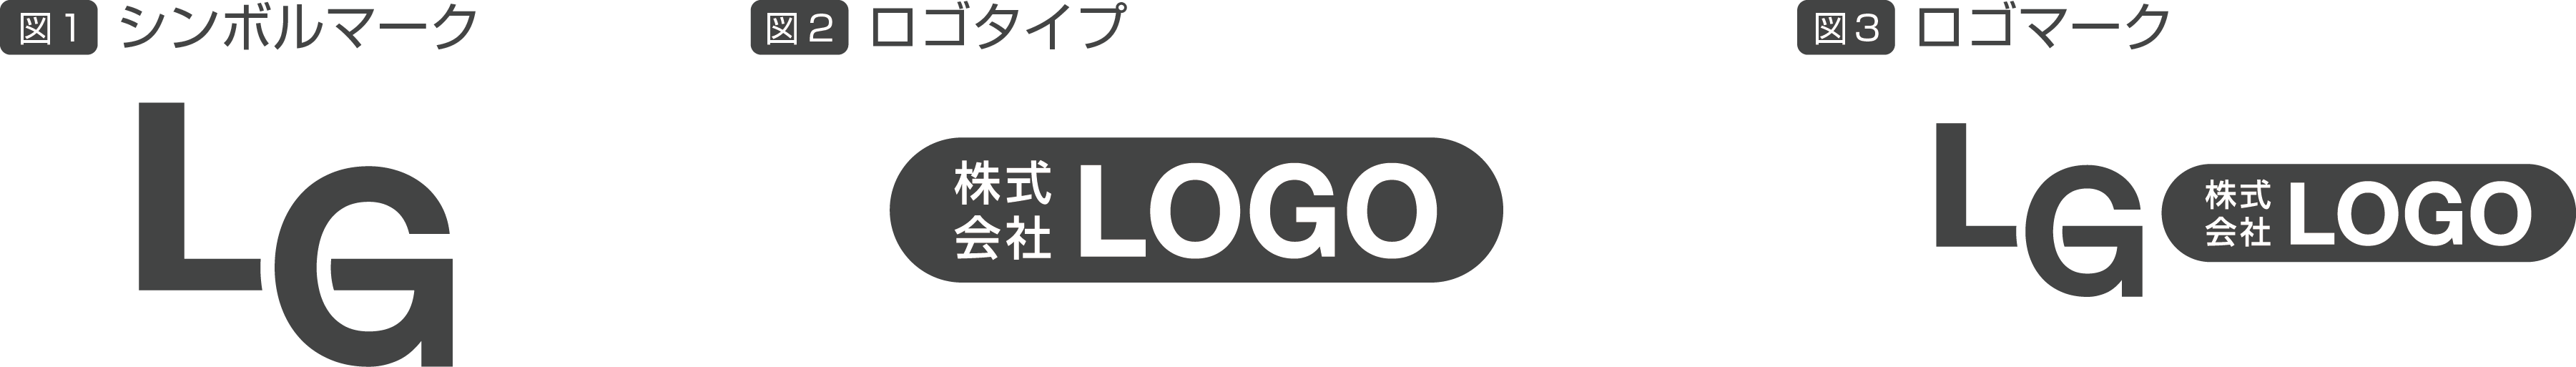 ロゴ、シンボルマークの定義